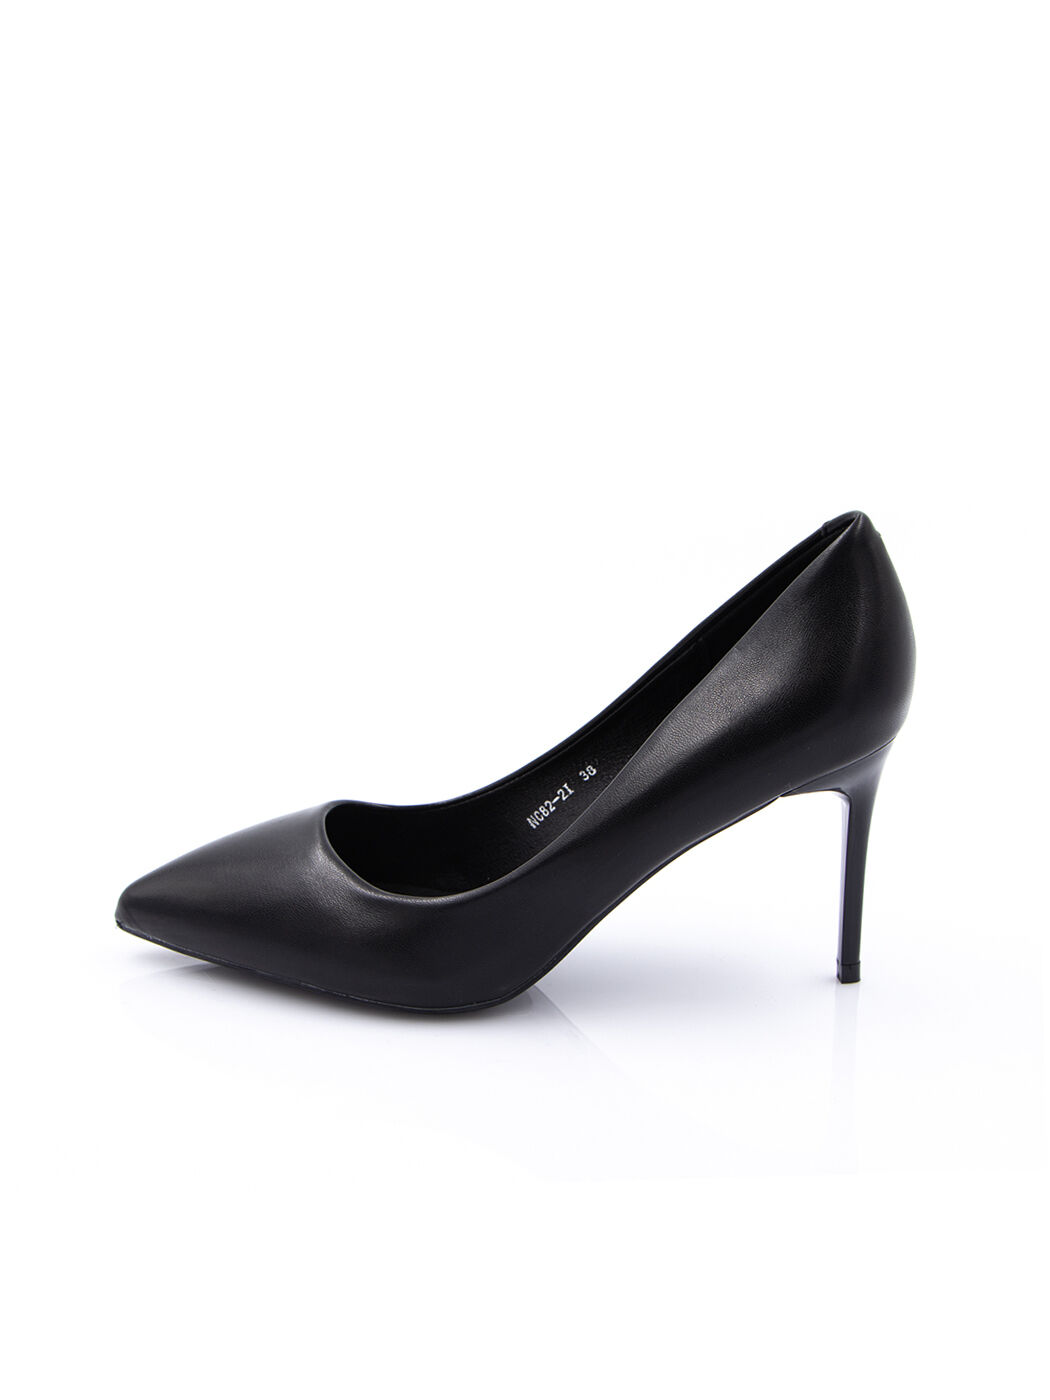 Туфли женские черные экокожа каблук шпилька демисезон от производителя IM